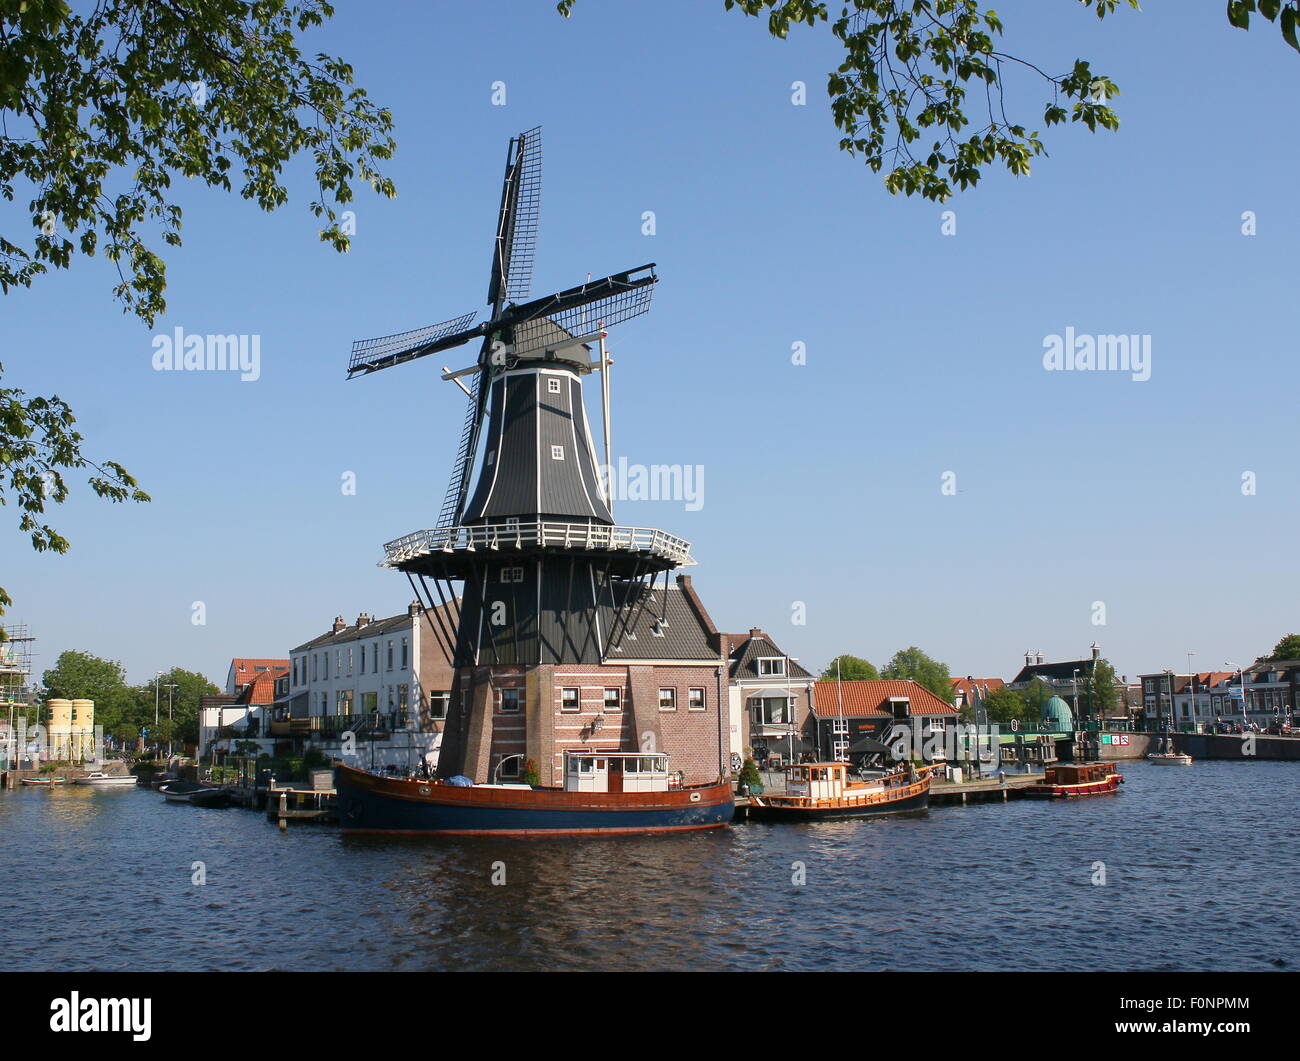 Adriaan de moulin à Haarlem, aux Pays-Bas. Reconstruit en 2002. Le moulin d'origine date de 1779. Vu de la rivière Spaarne Banque D'Images